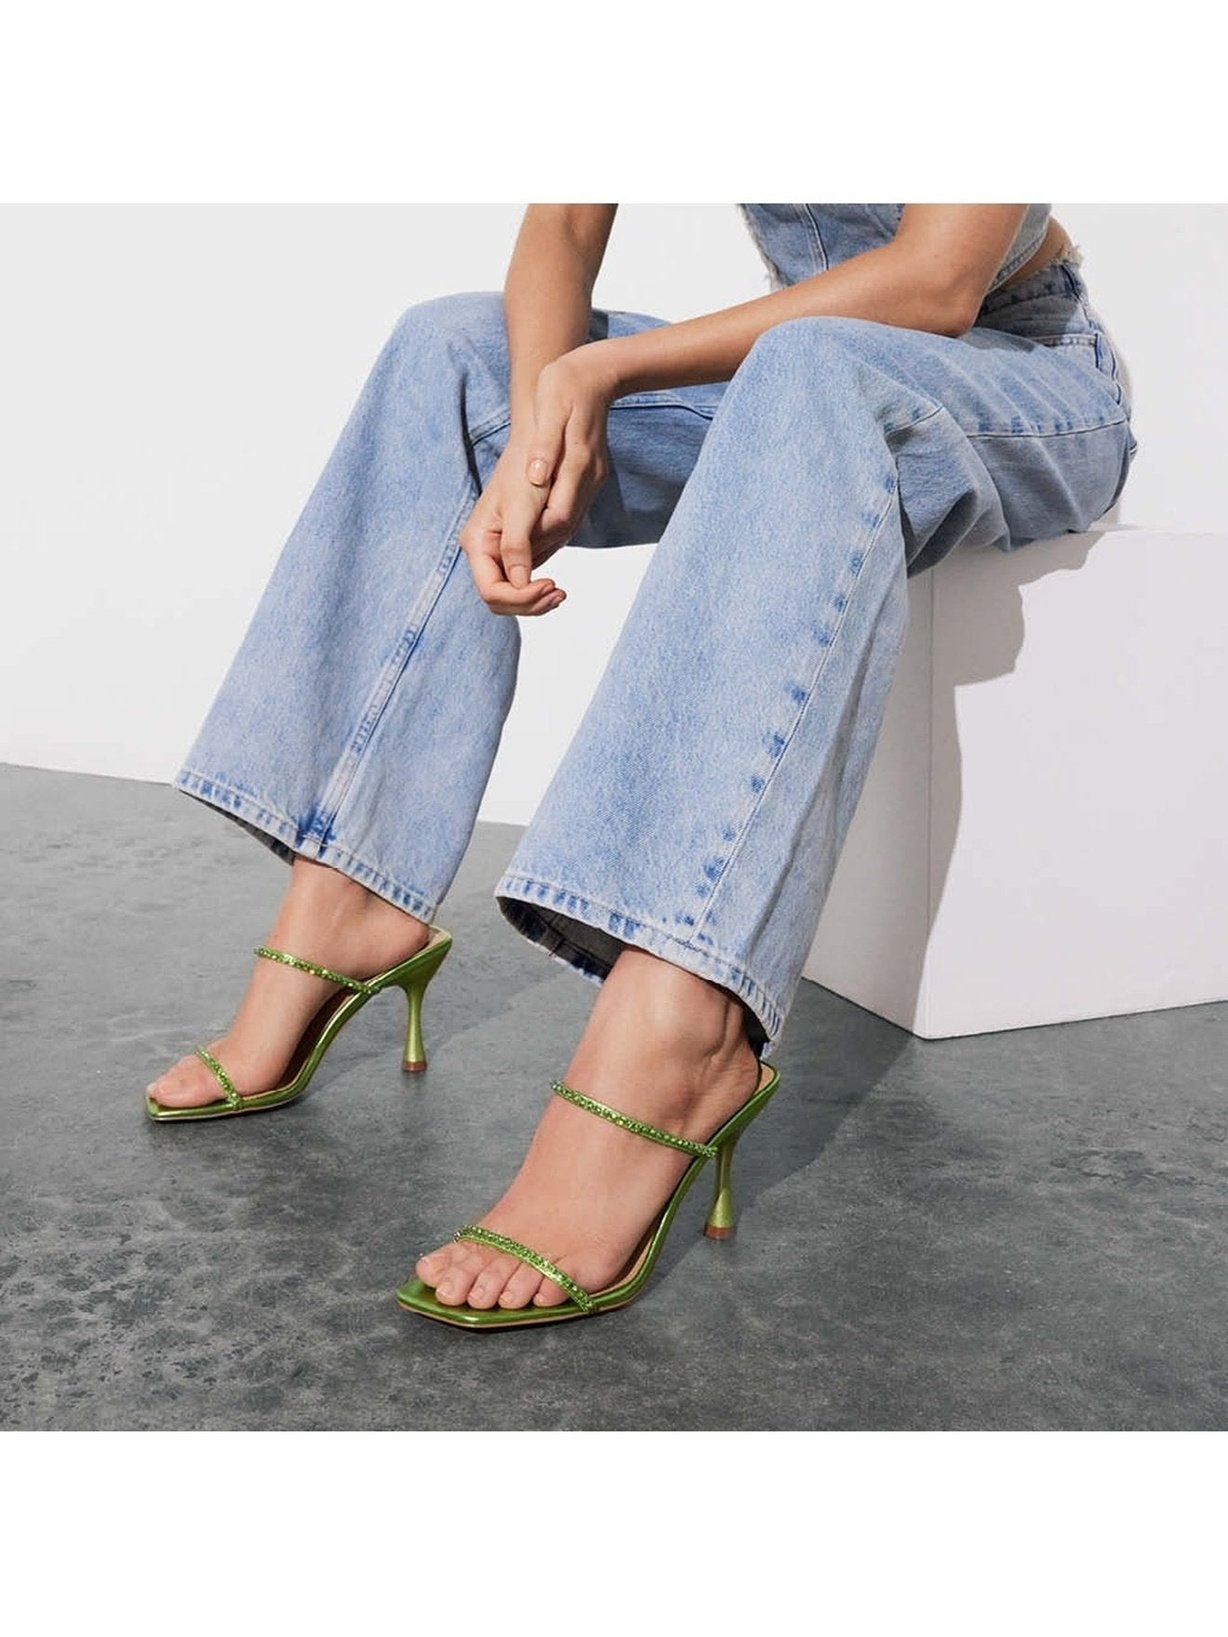 Izzy Diamante Stiletto Heels - Lime Green Metallic Leather